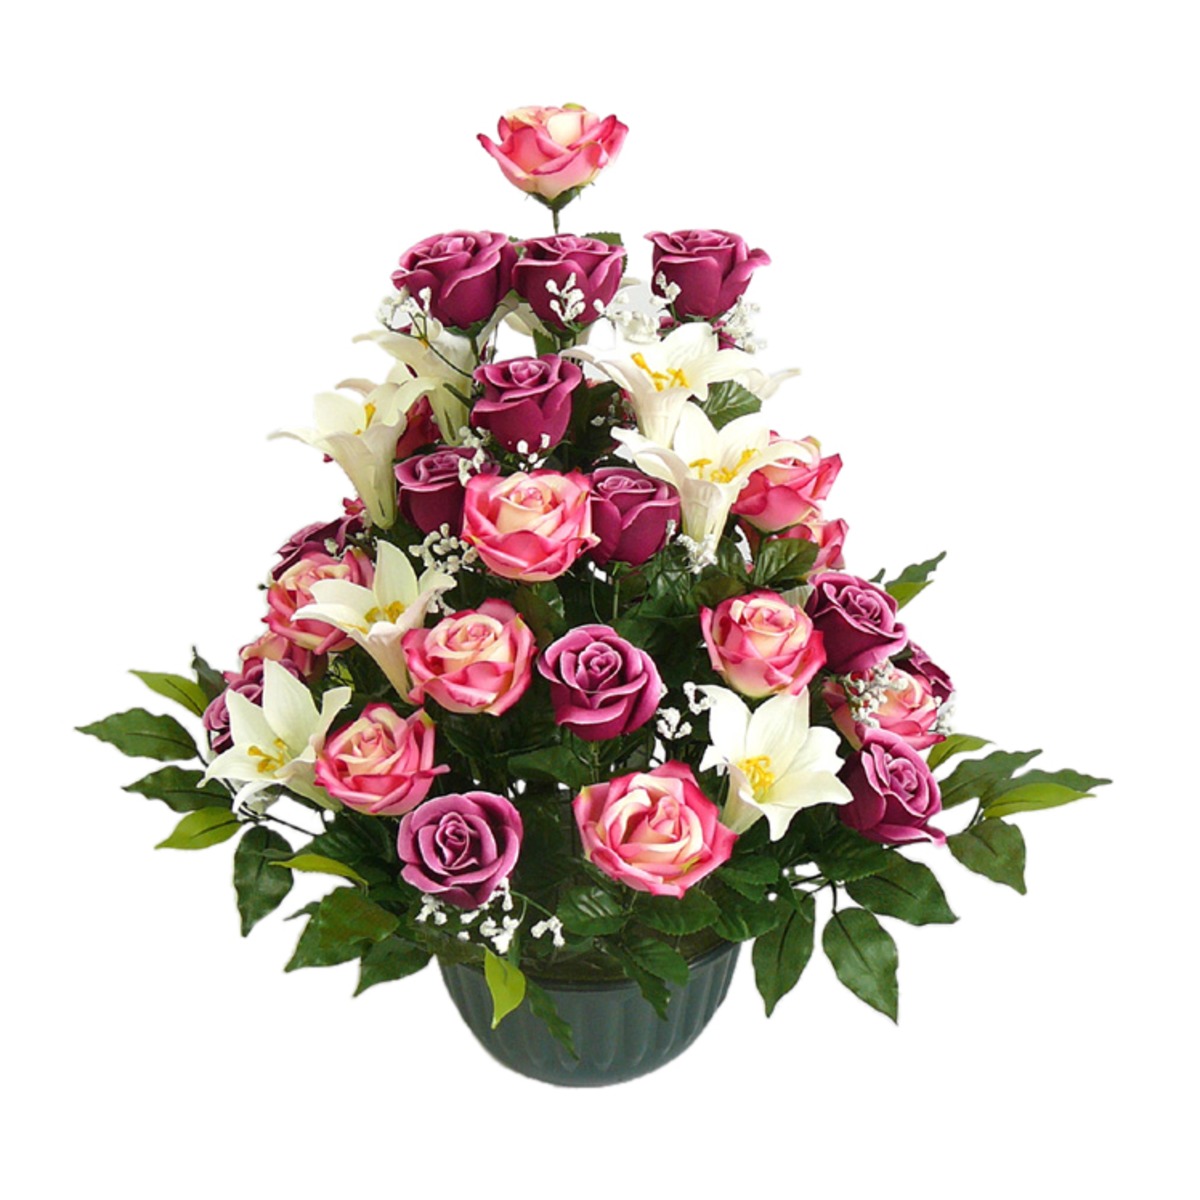 Coupe roses + lys - Hauteur 63 cm - Rose, blanc, vert